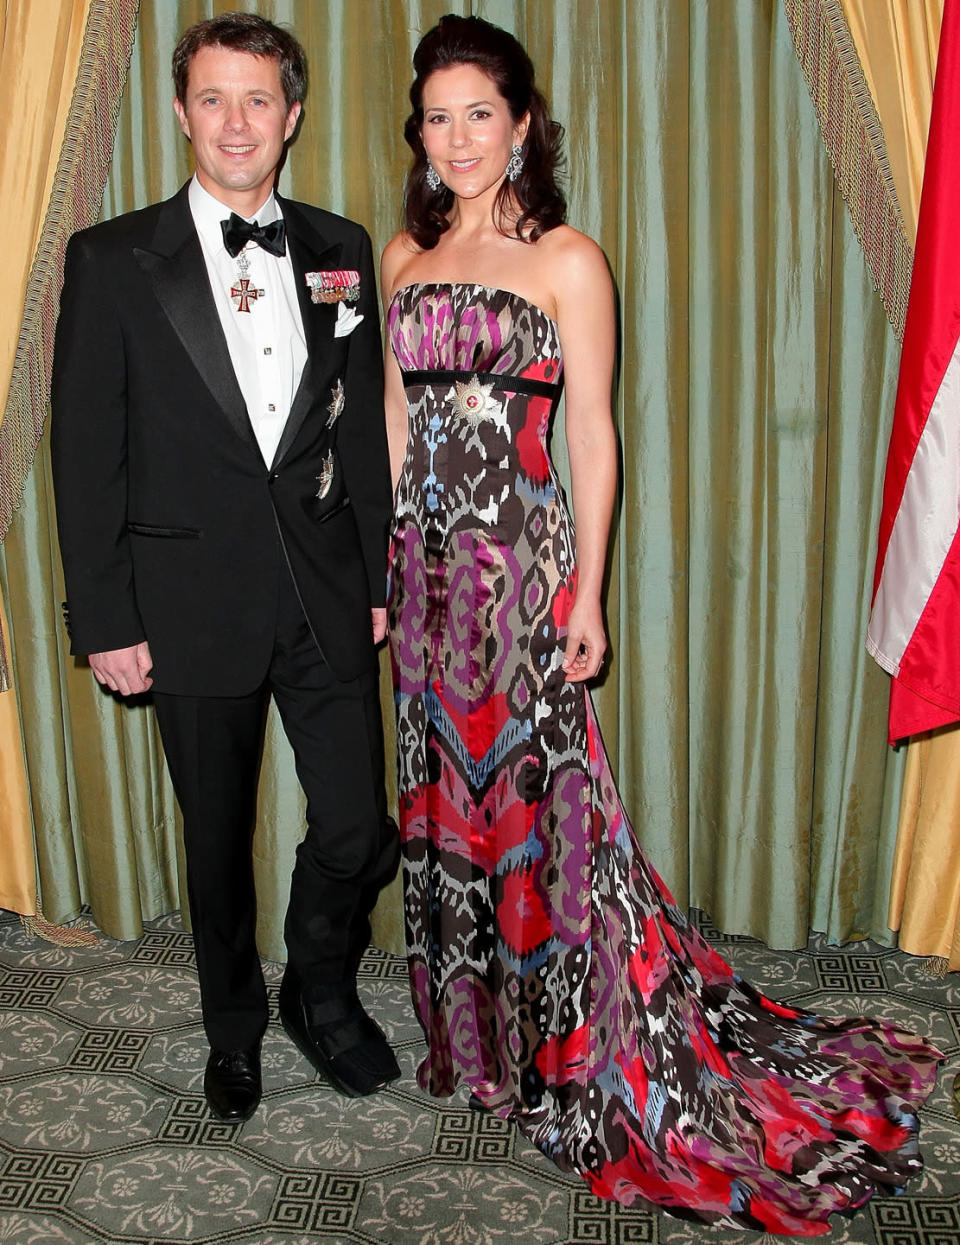 Langsam an Farbe angetastet, traut sich die dänische Prinzessin 2009 sogar an ein kunterbuntes Kleid. Für ein Gala-Dinner in New York wählte sie ein fließendes und wild gemustertes Abendkleid und stahl darin sogar den Stars die Show.